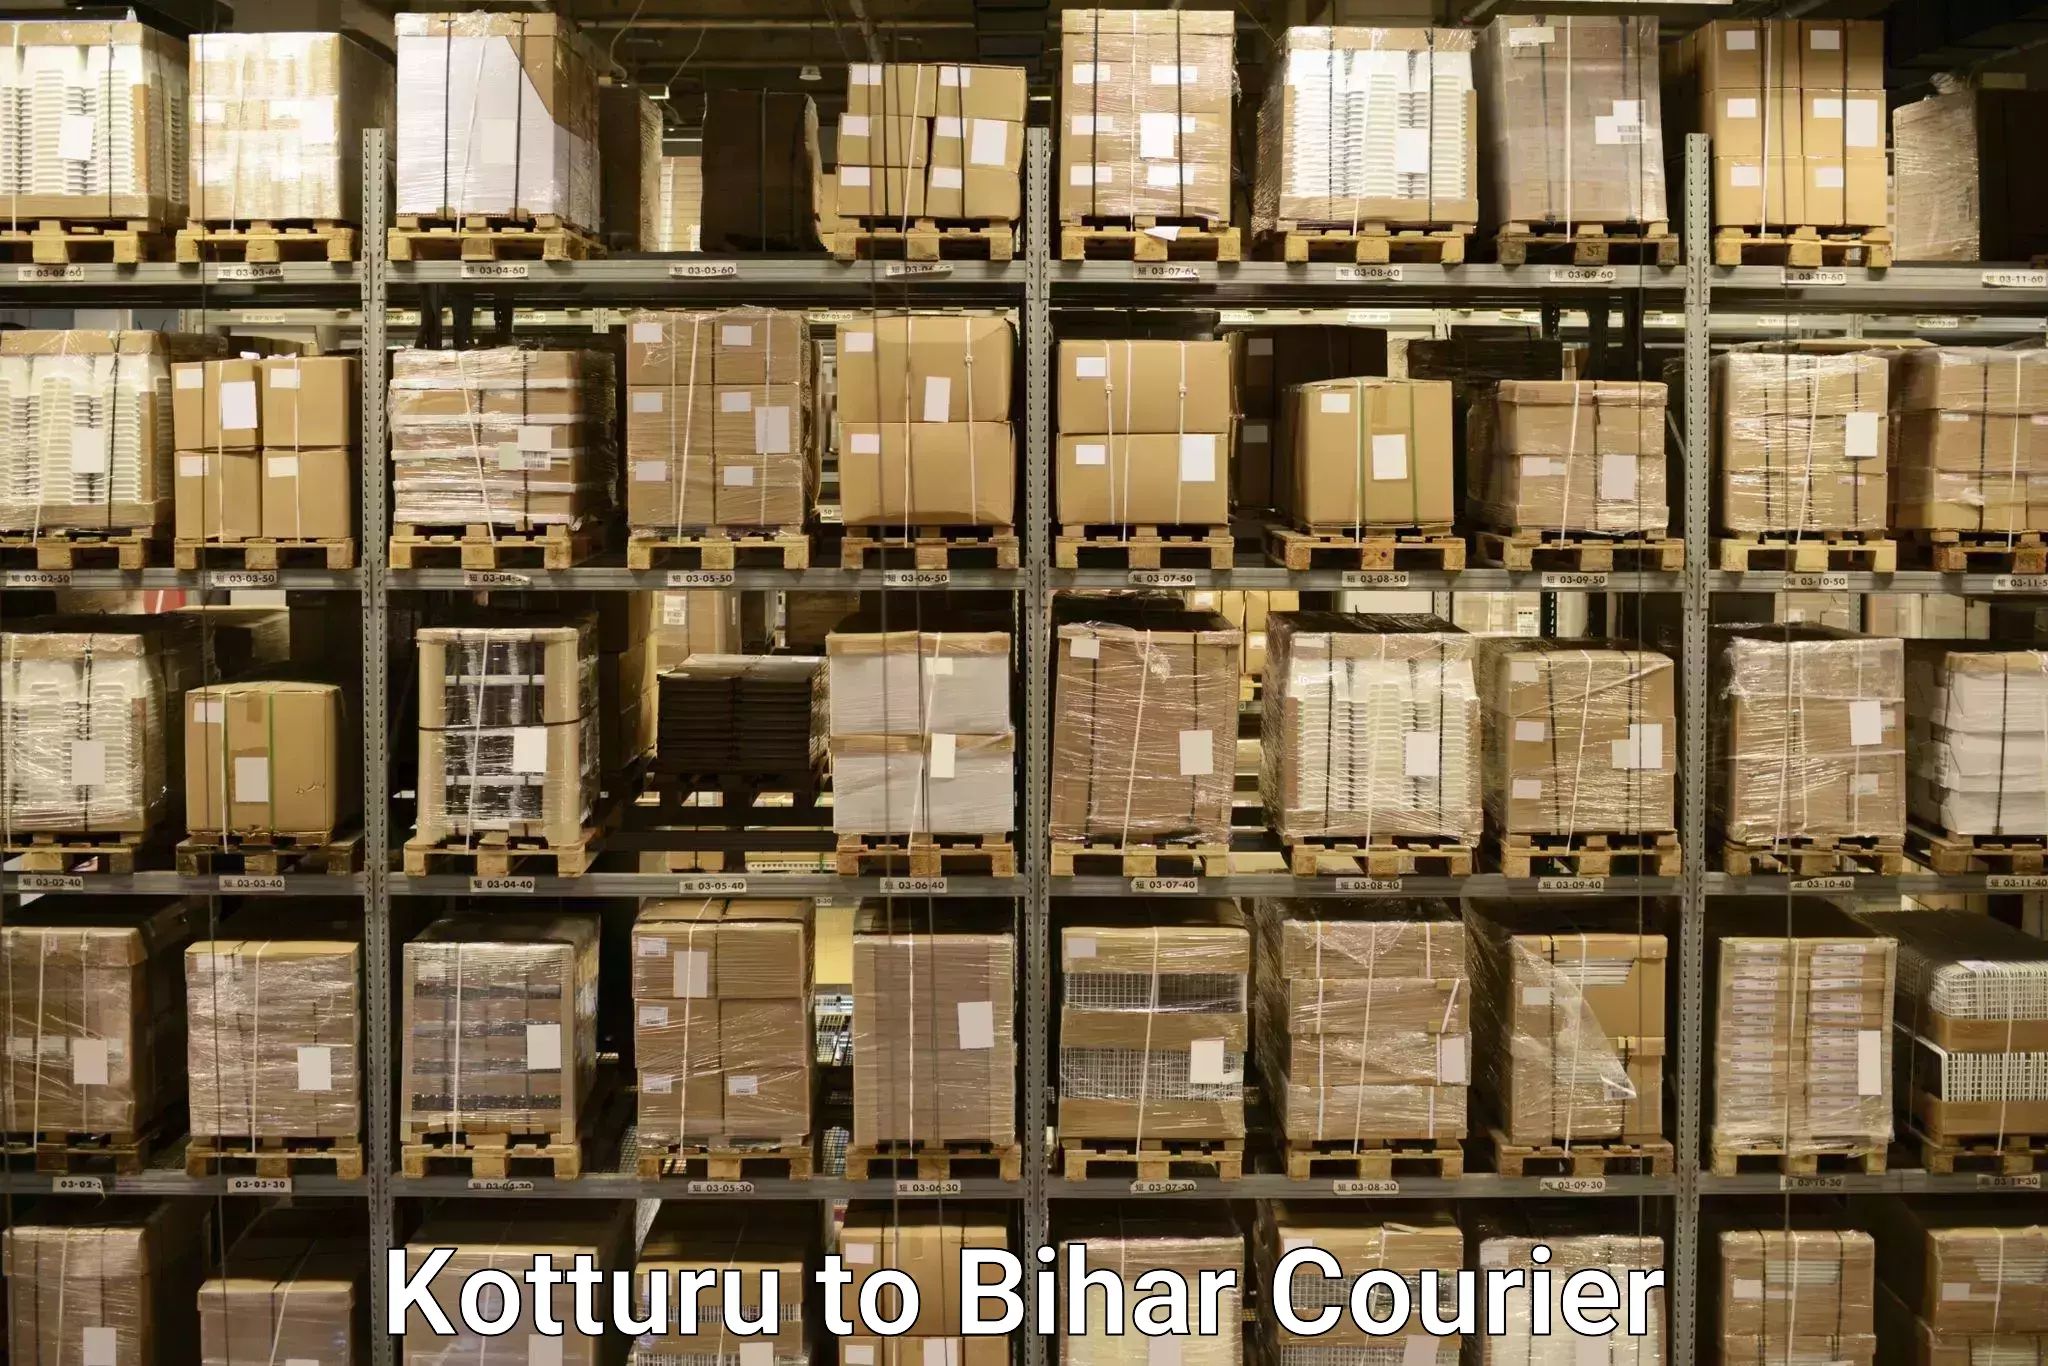 Excess baggage transport Kotturu to Bihar